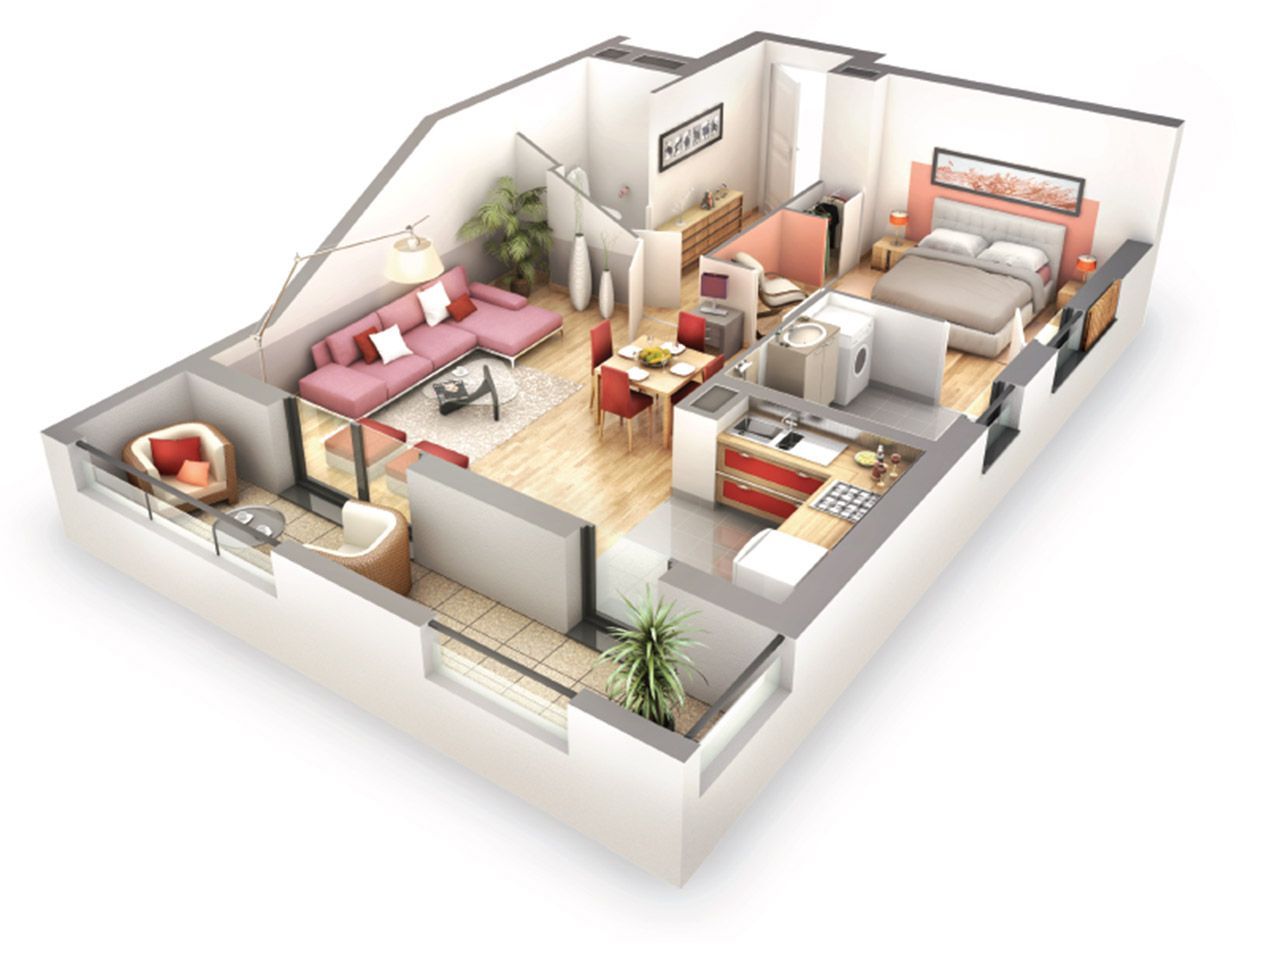  Plan  appartement  duplex Bricolage Maison  et d coration